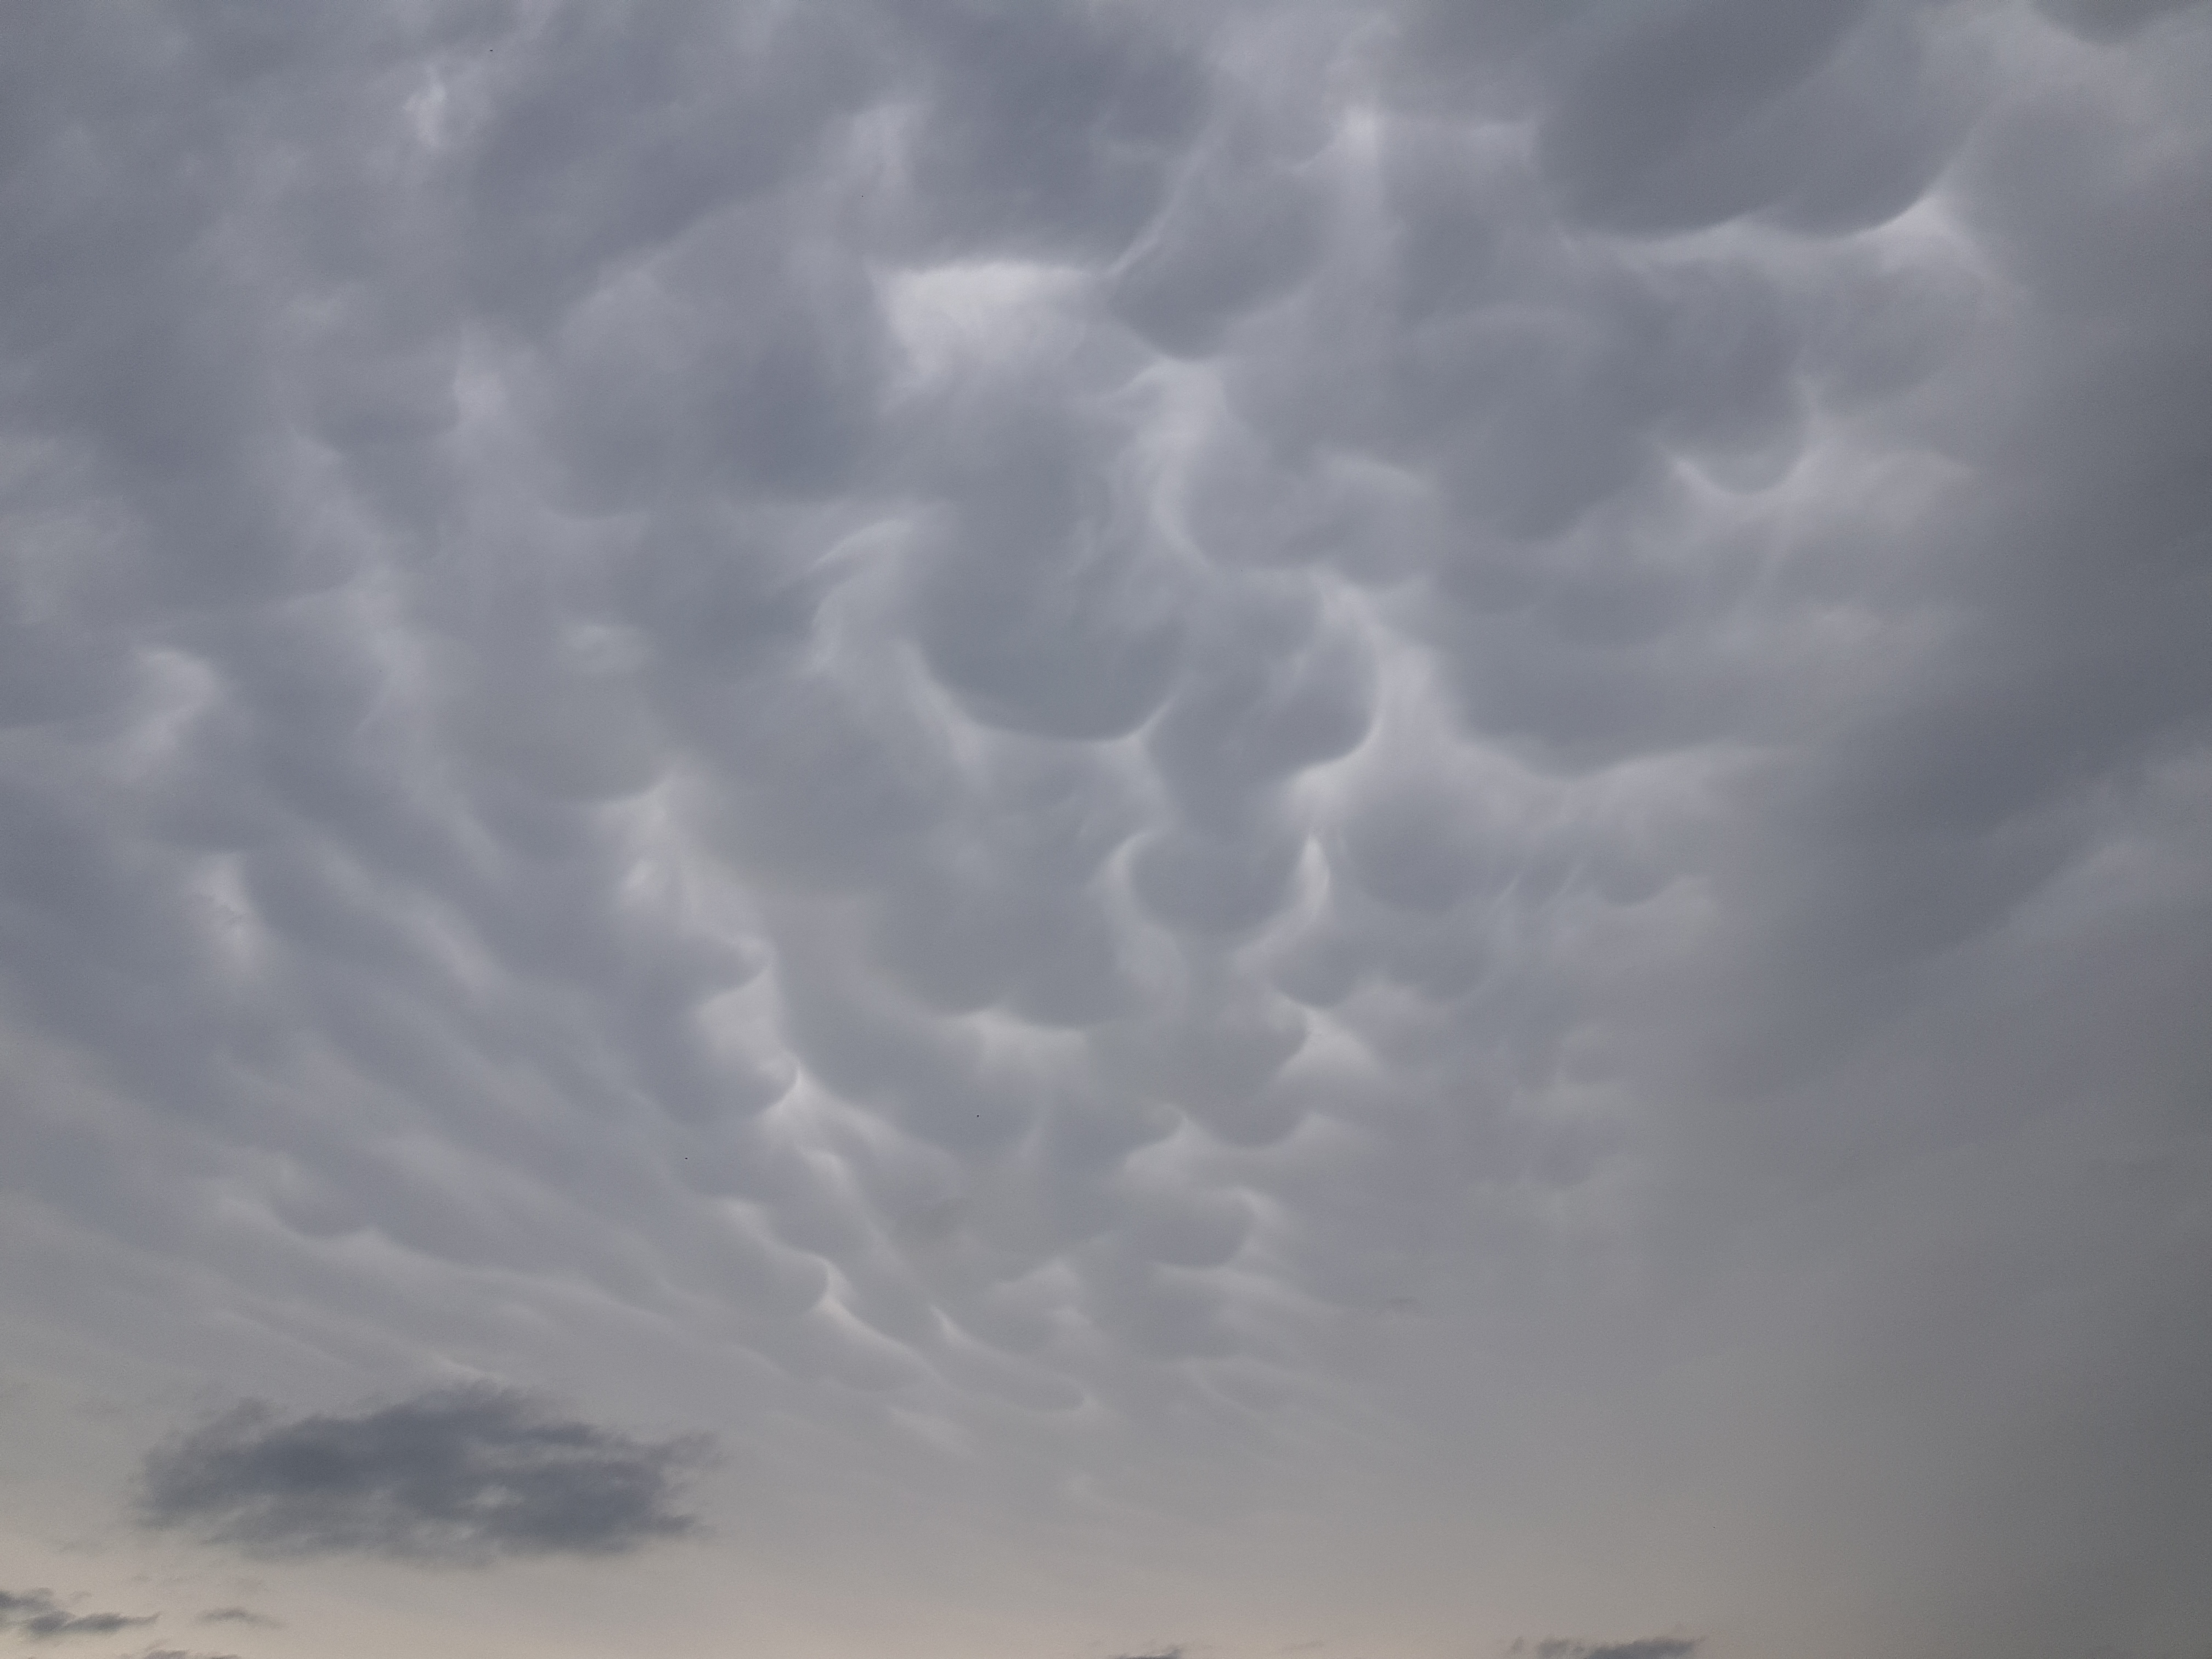 Te chmury towarzyszą gwałtownym burzom. Wyglądają jak ogromne bąble lub wymiona (zdjęcia)